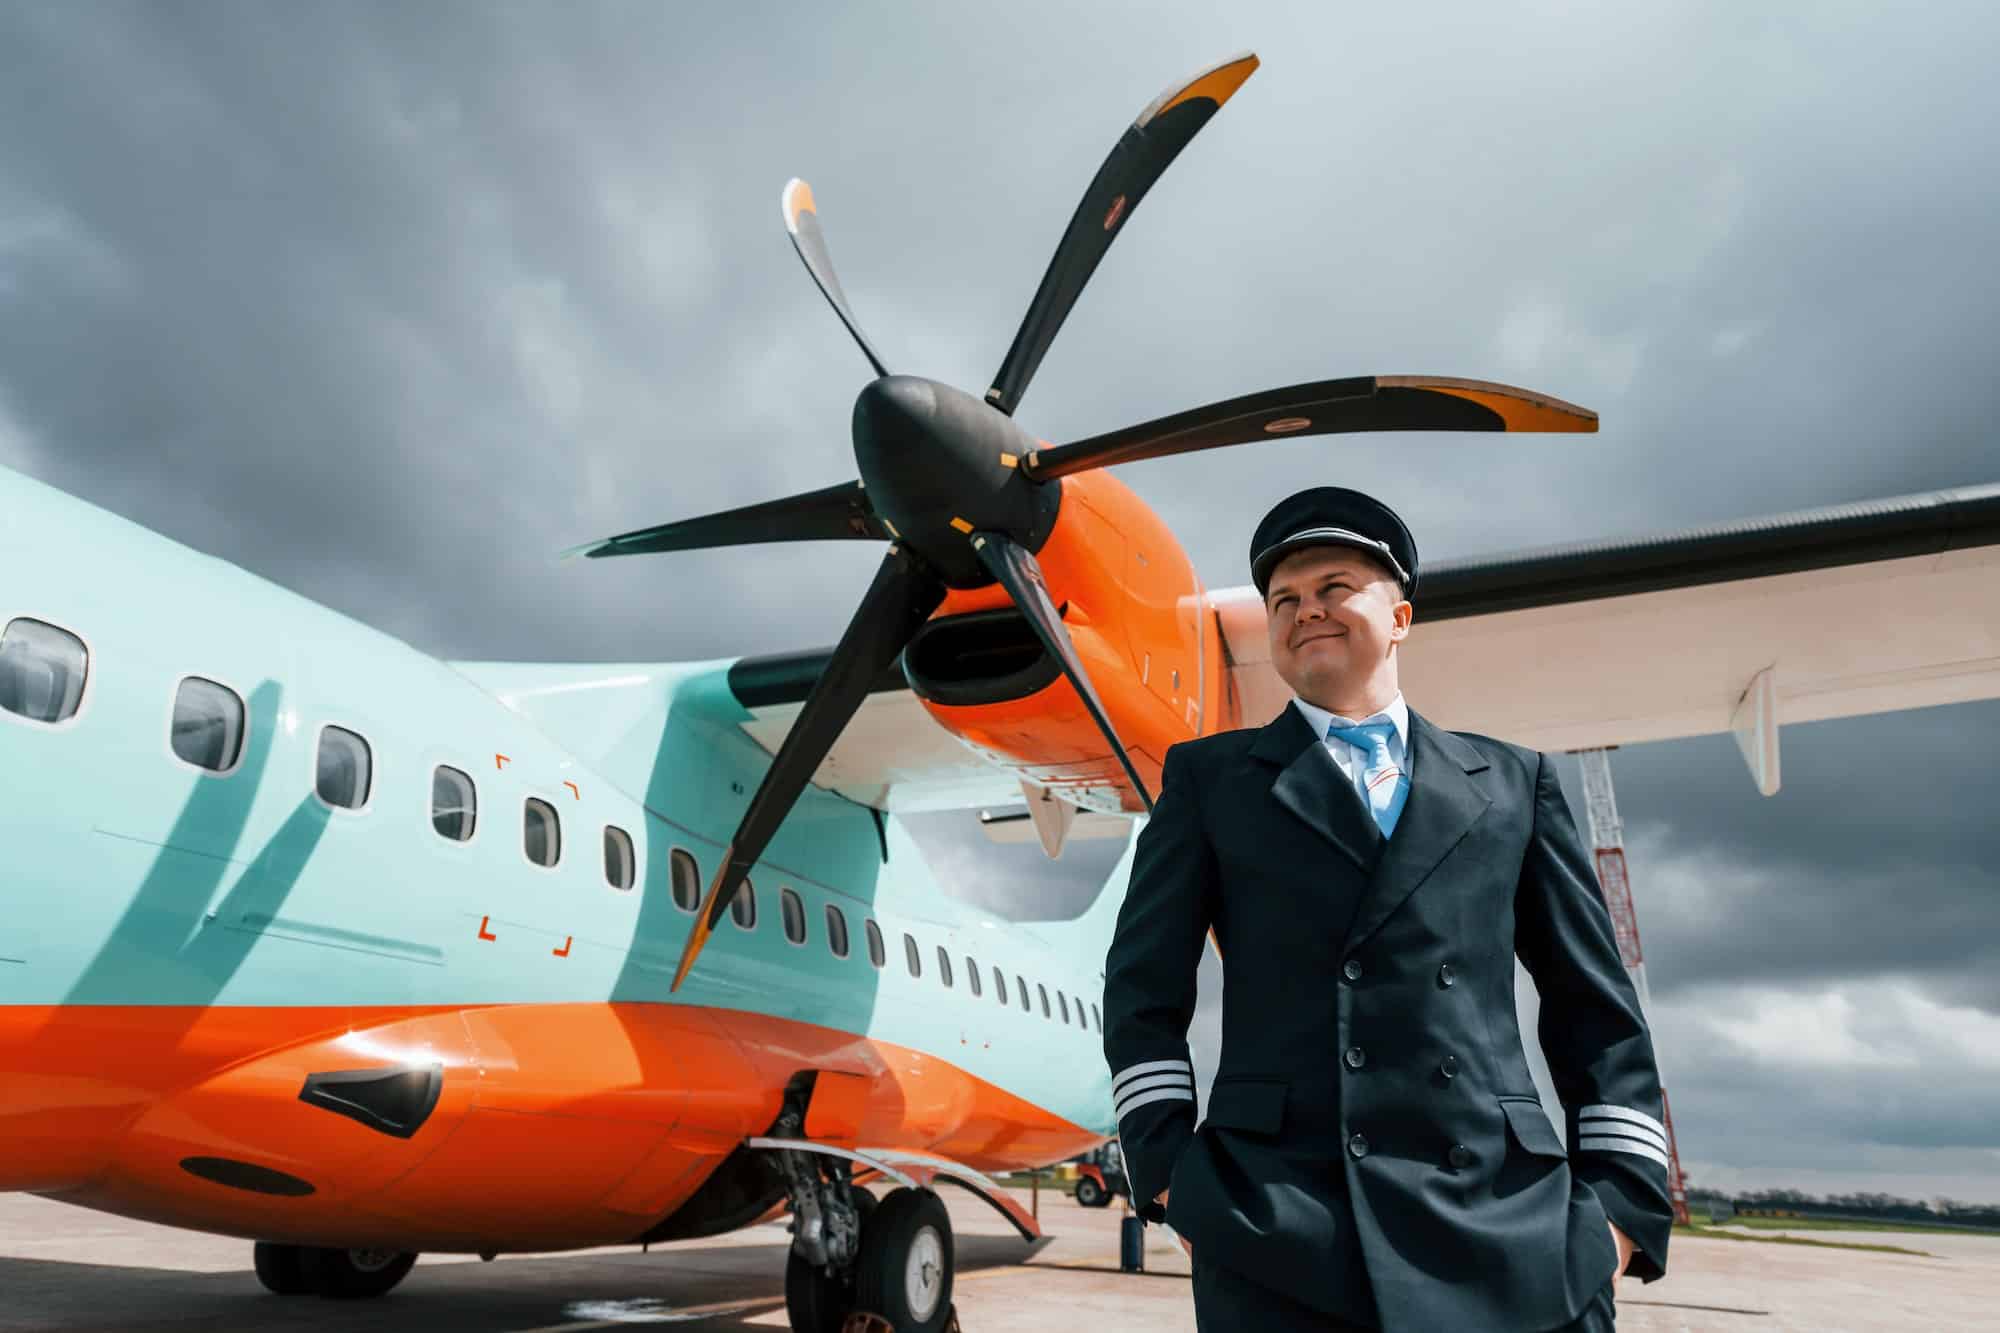 Pilot in uniform standing outdoors near modern airplane